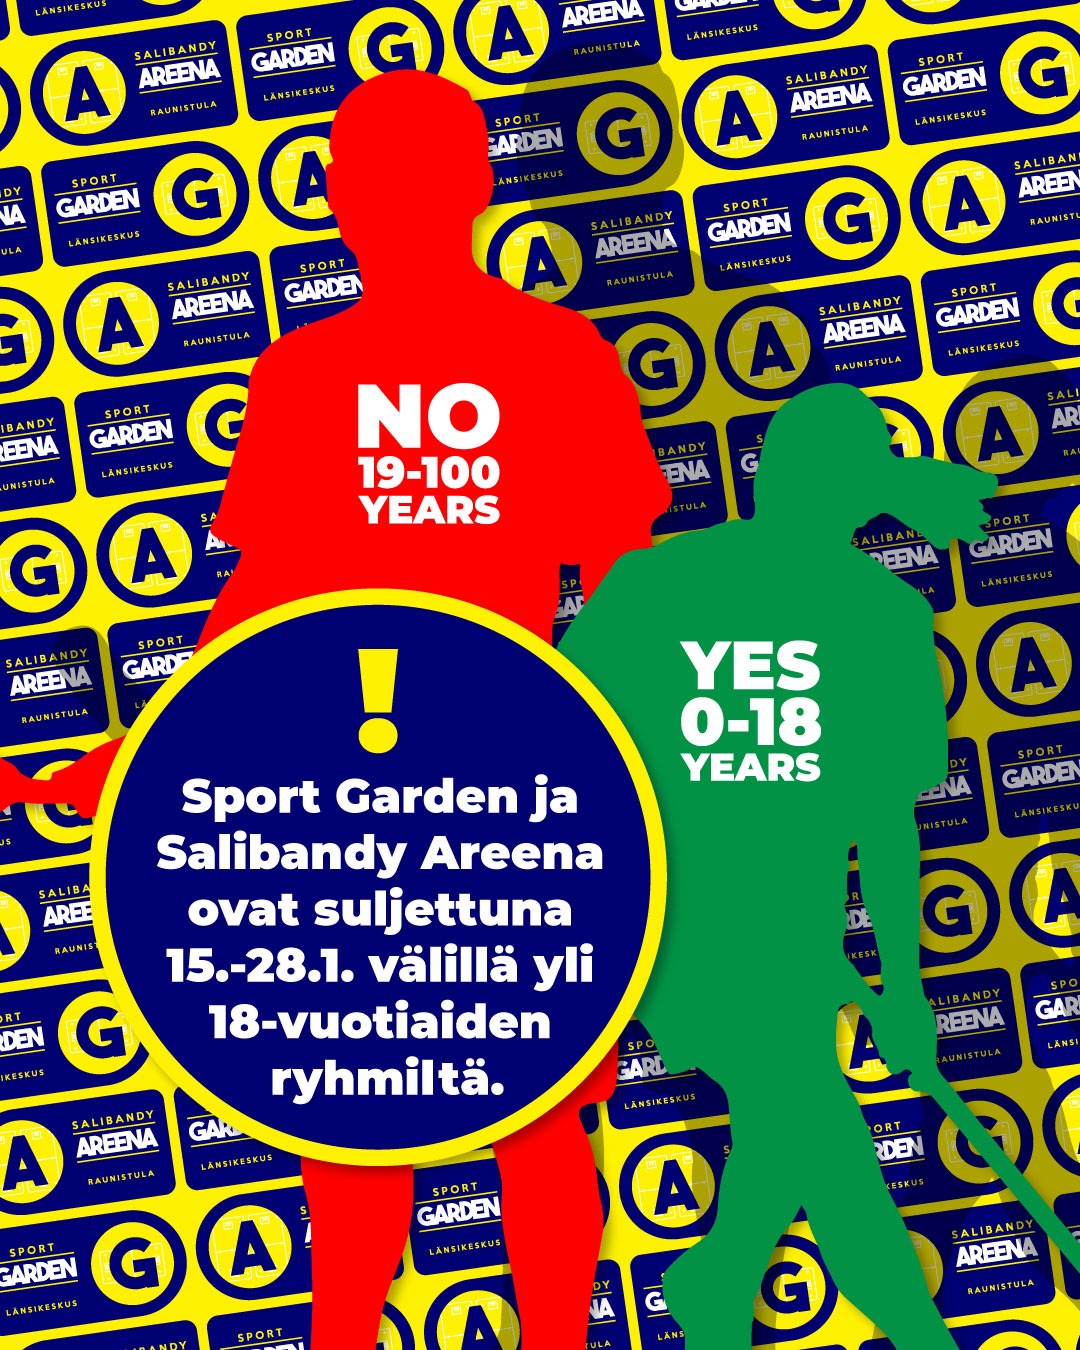 Read more about the article Sport Garden ja Salibandy Areena ovat 15.1. – 28.1.2022 välillä suljettuna yli 18-vuotiaiden ryhmiltä